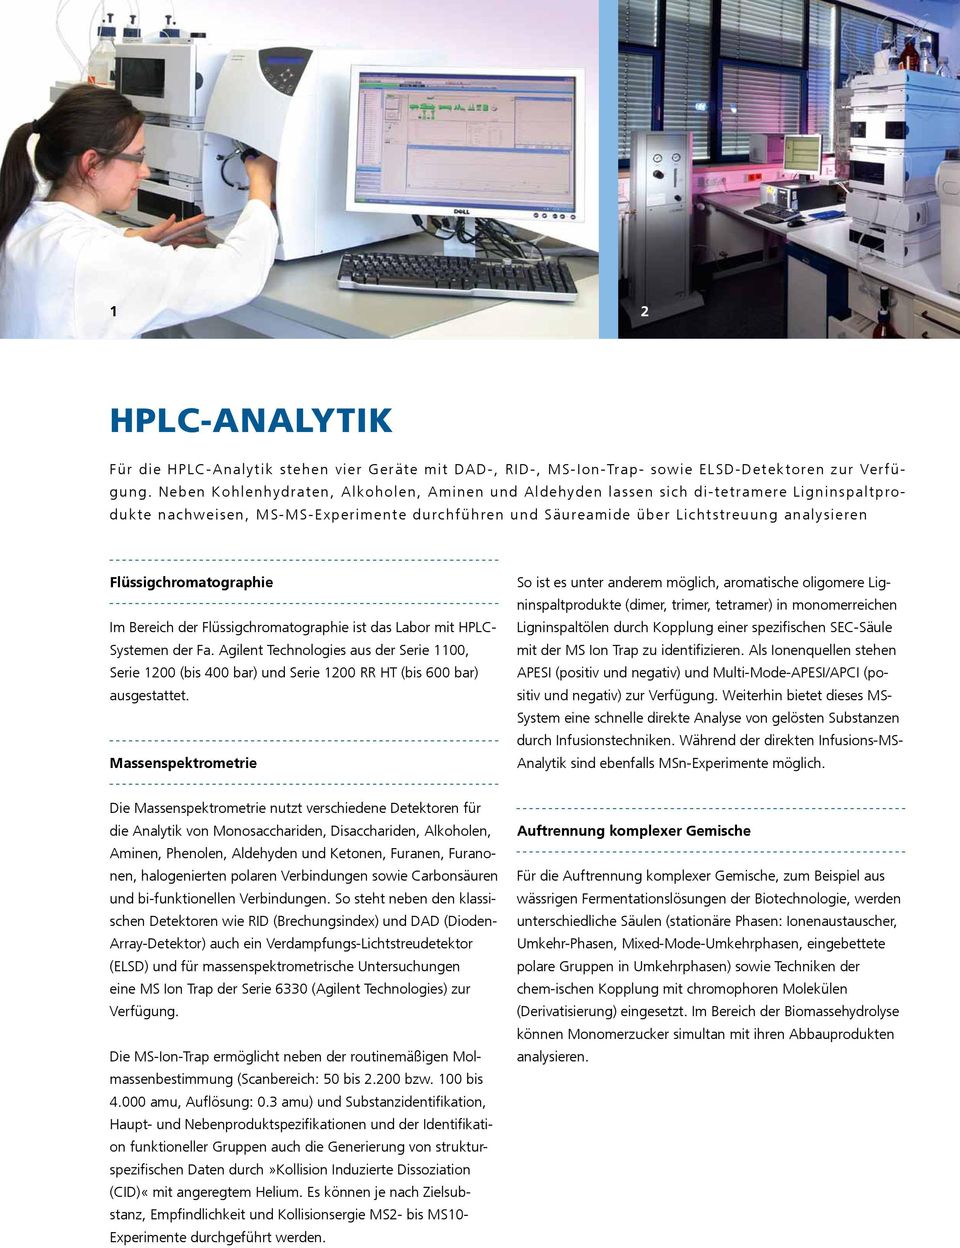 Flüssigchromatographie Im Bereich der Flüssigchromatographie ist das Labor mit HPLC- Systemen der Fa.